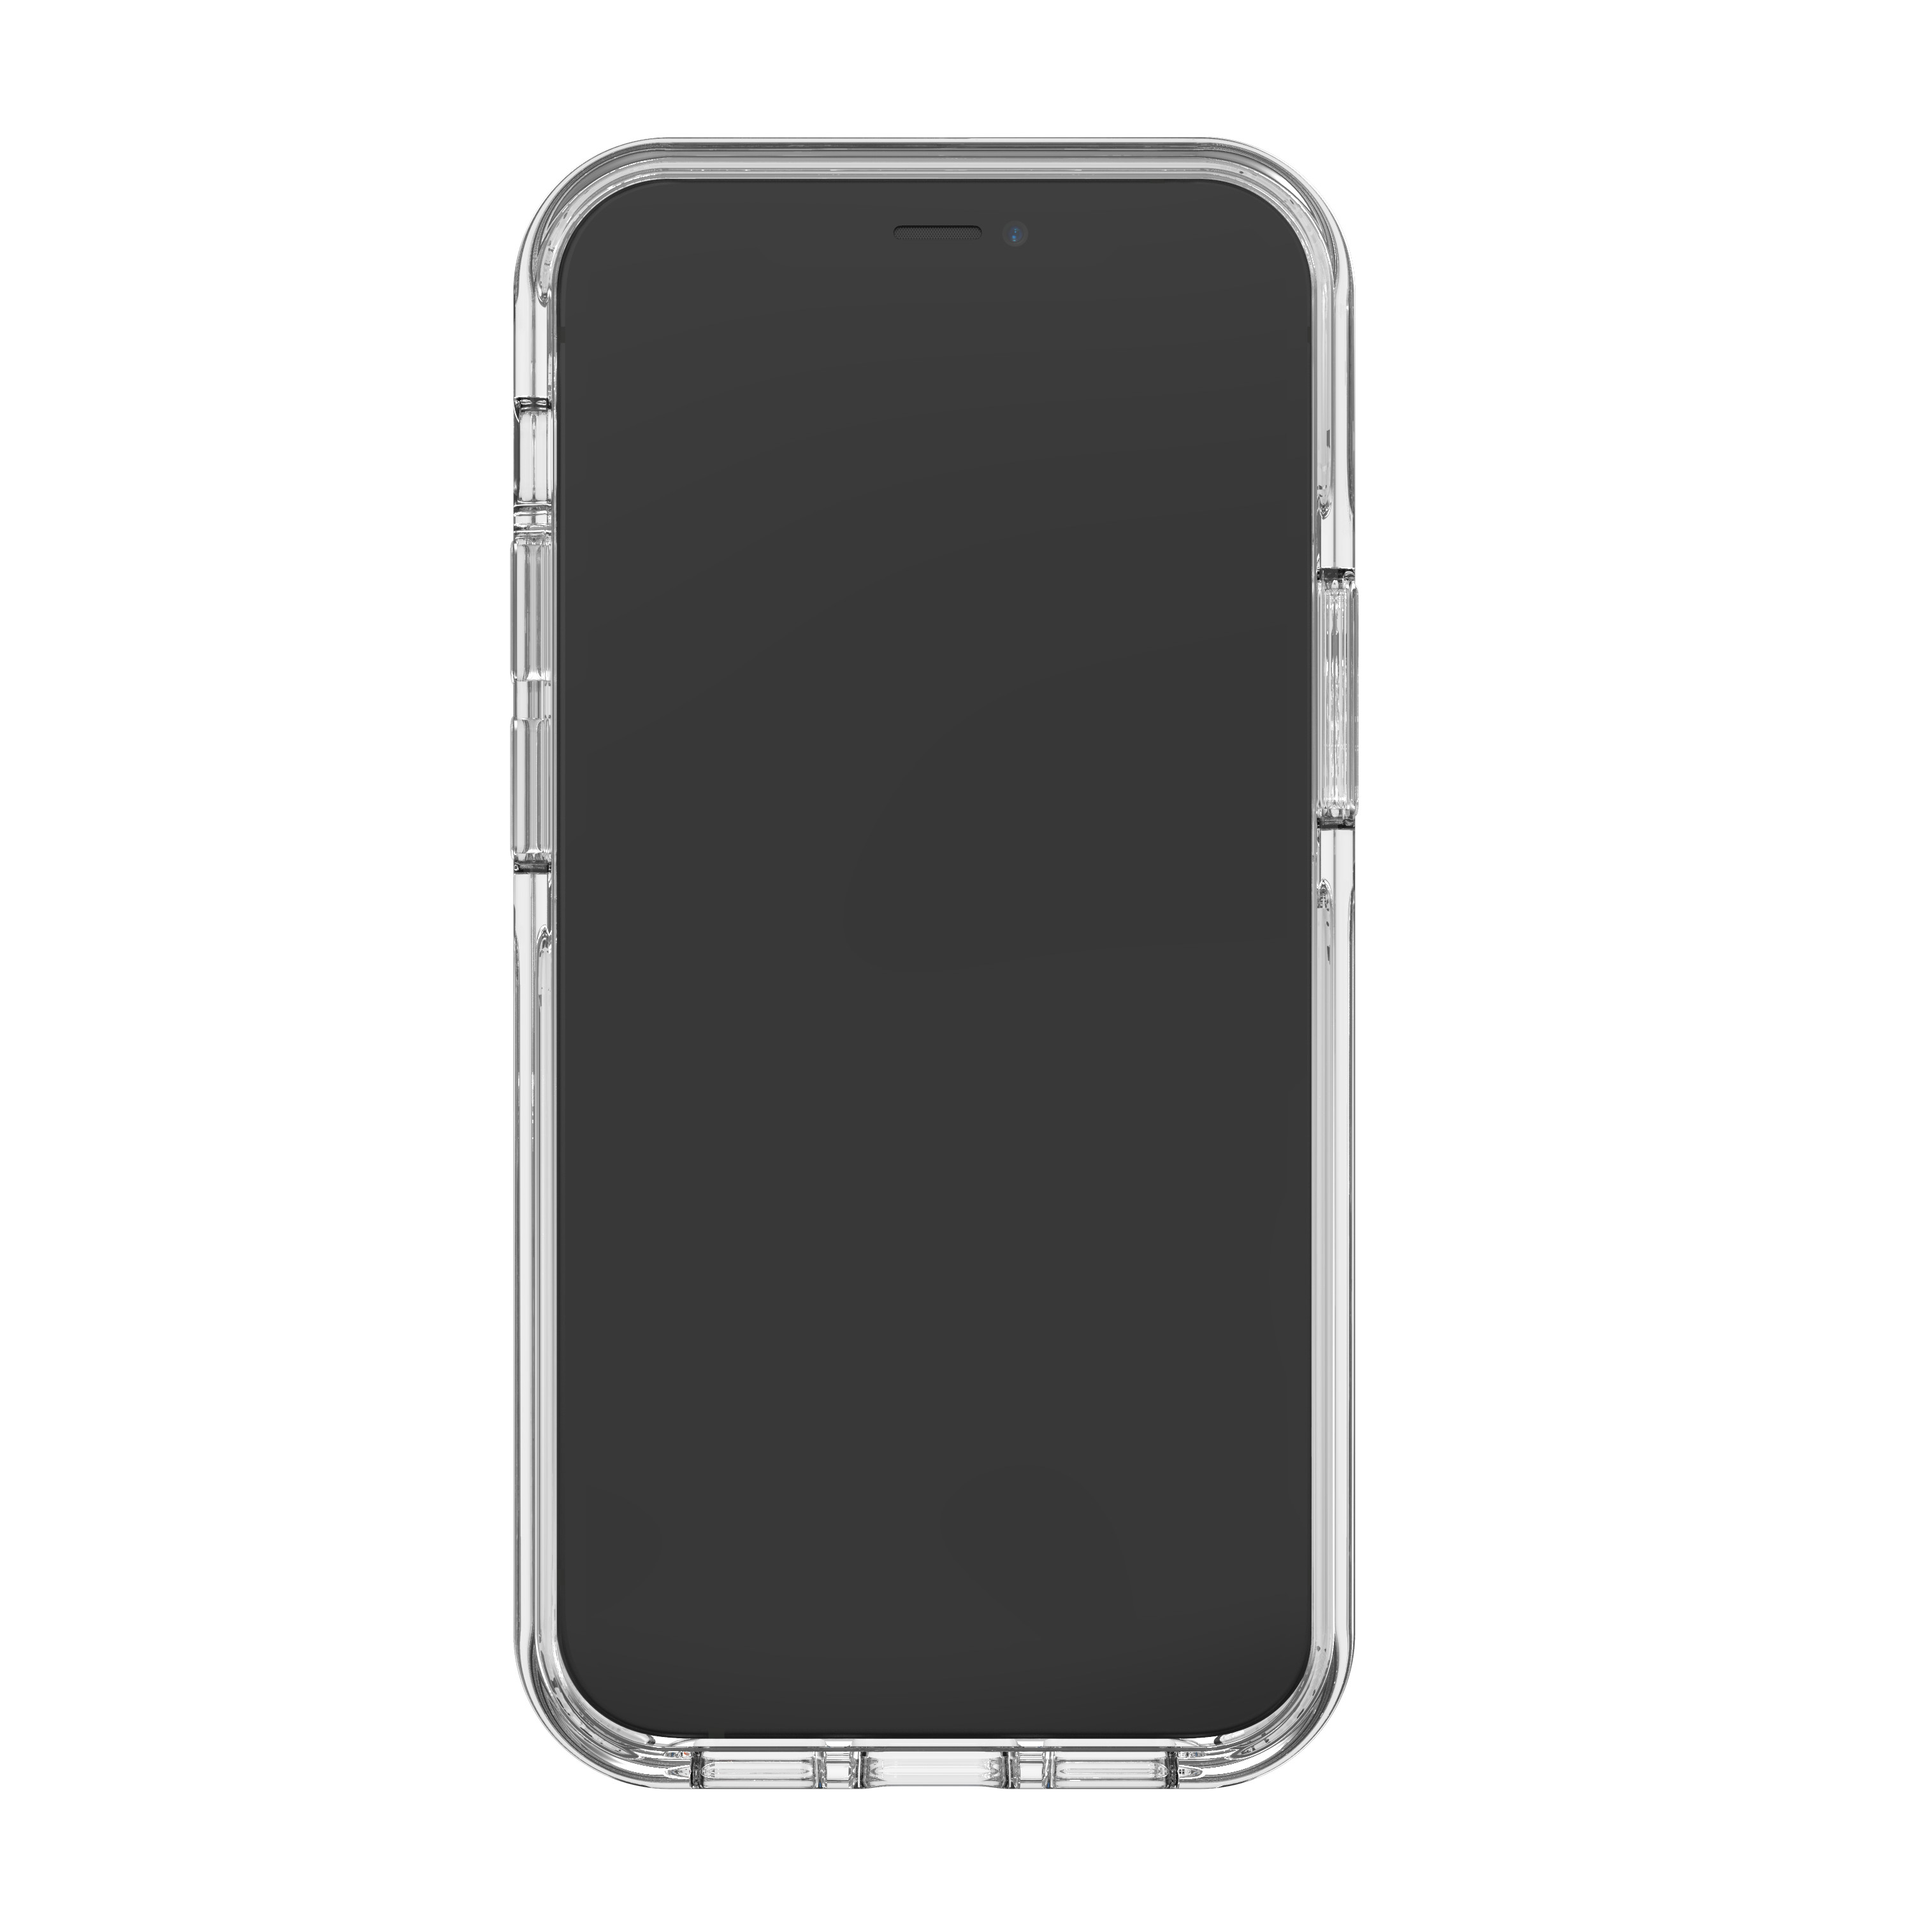 Ốp lưng chống sốc Gear4 D3O Crystal Palace Snap 4m hỗ trợ sạc Magsafe cho iPhone - Hàng Chính Hãng